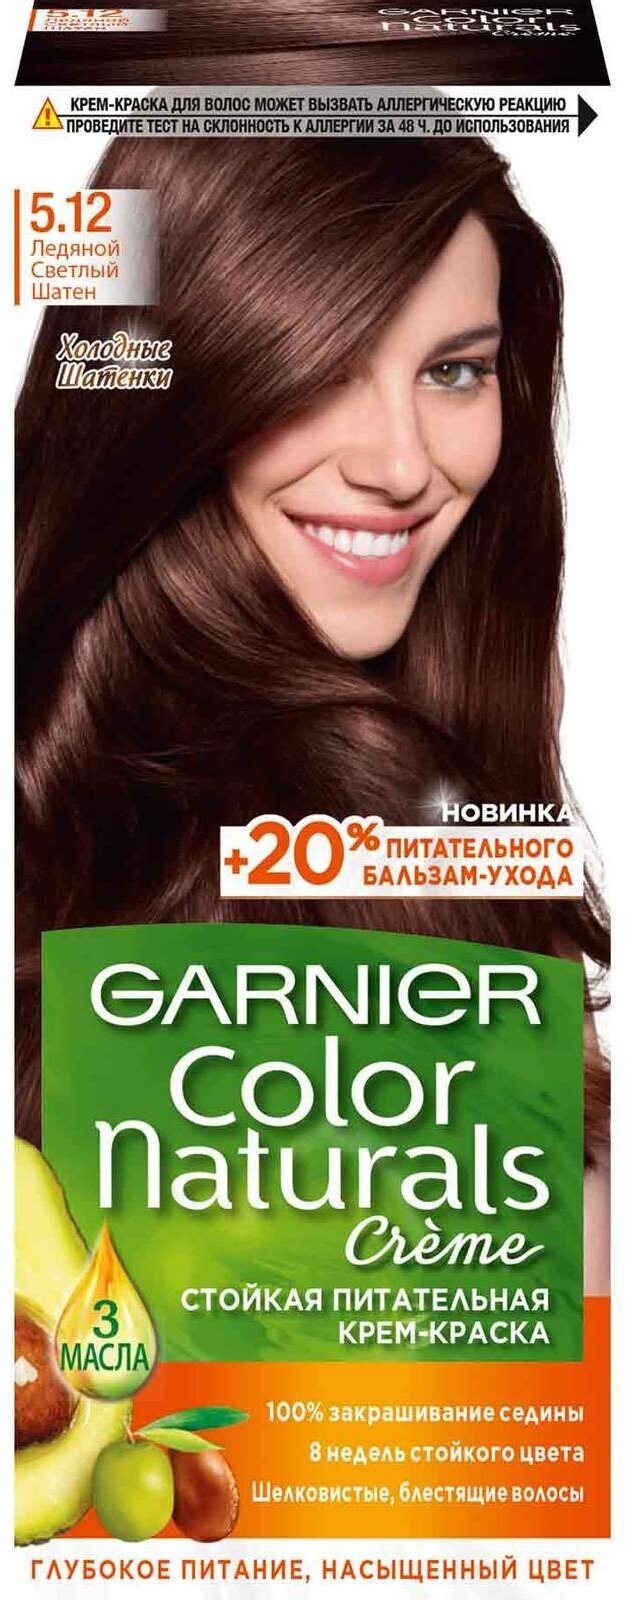 GARNIER Color Naturals стойкая питательная крем-краска для волос 5.12 Ледяной светлый шатен